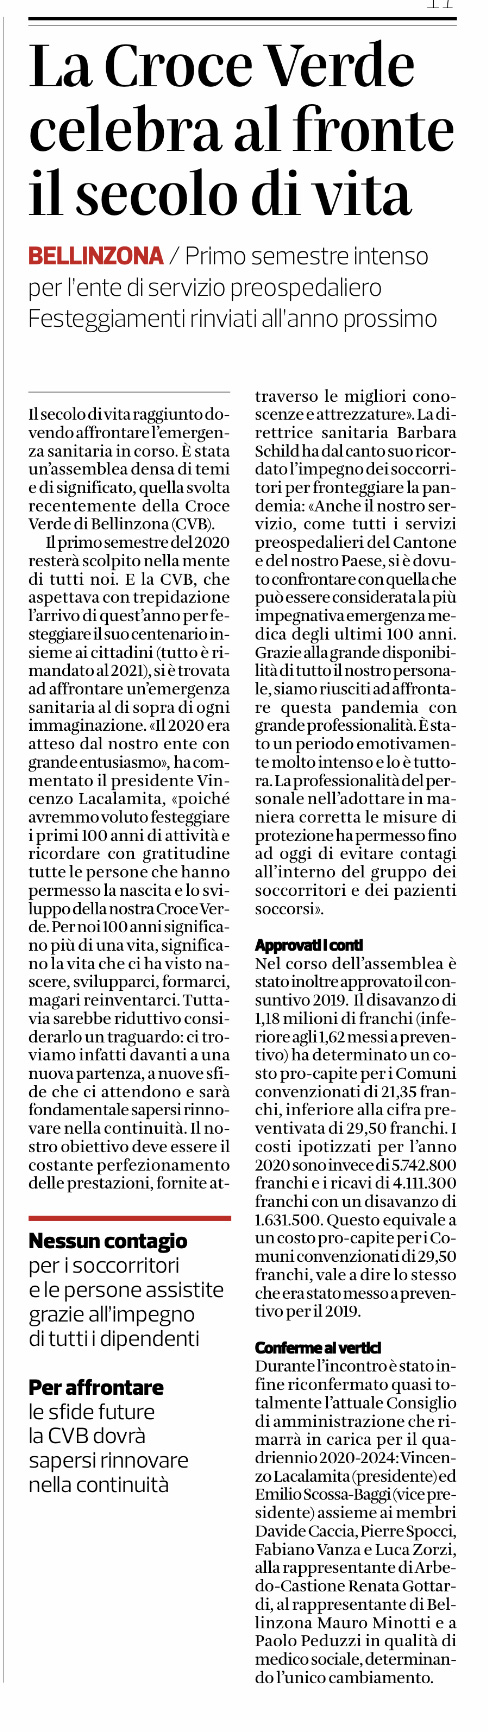 Corriere del Ticino.31.07.2020